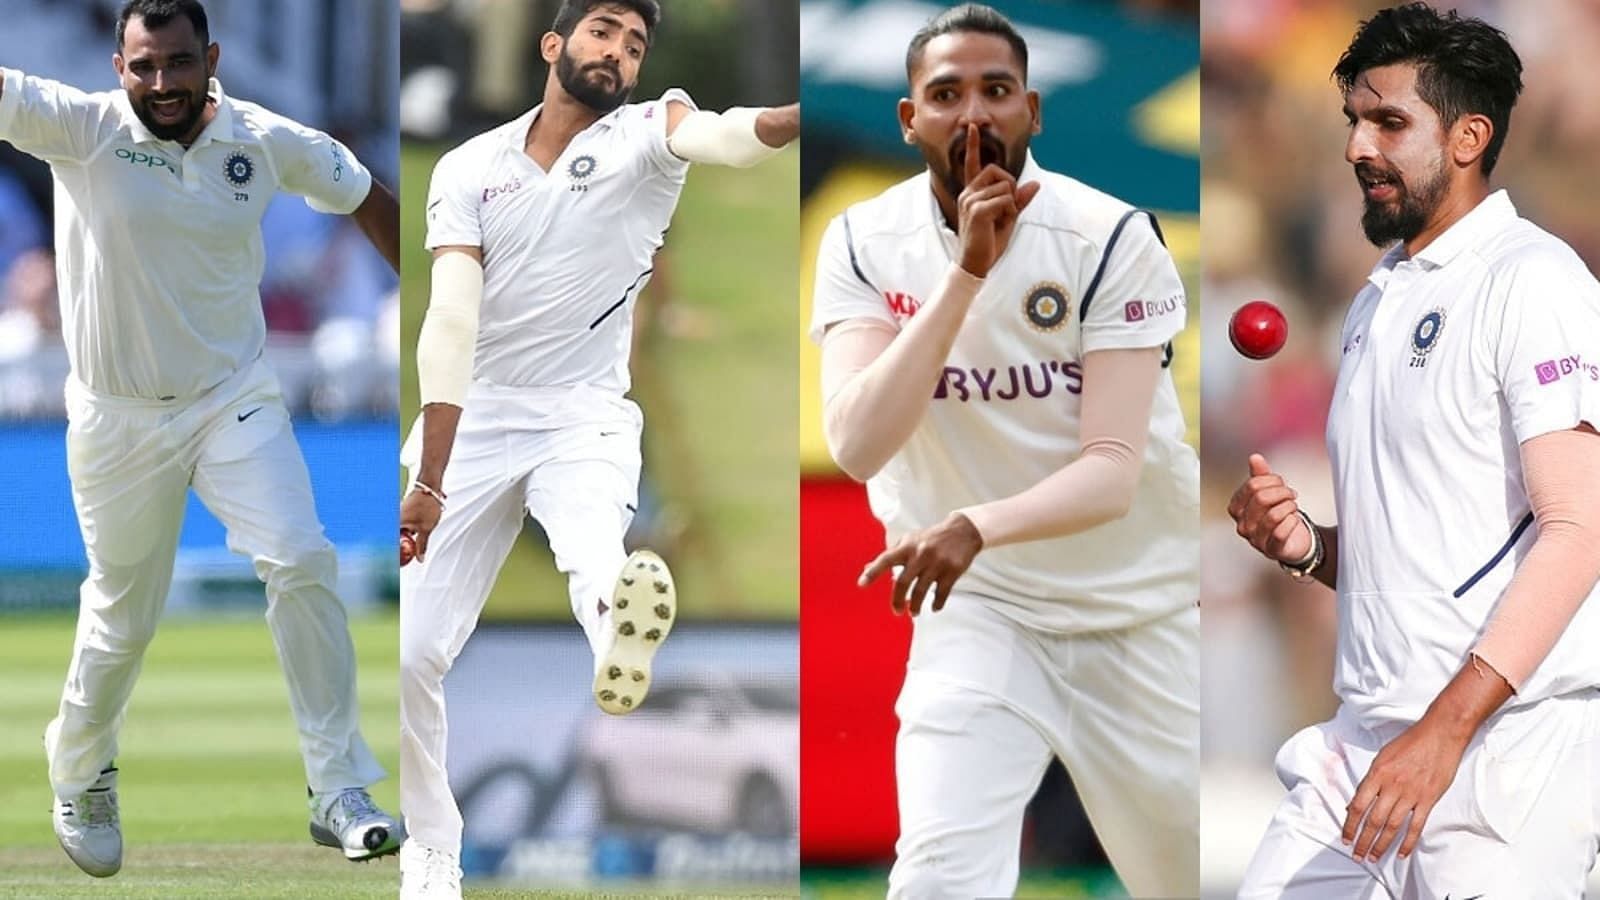 भारतीय टीम के तेज गेंदबाजों के बेहतरी को लेकर इंग्लिश दिग्गज ने प्रतिक्रिया 